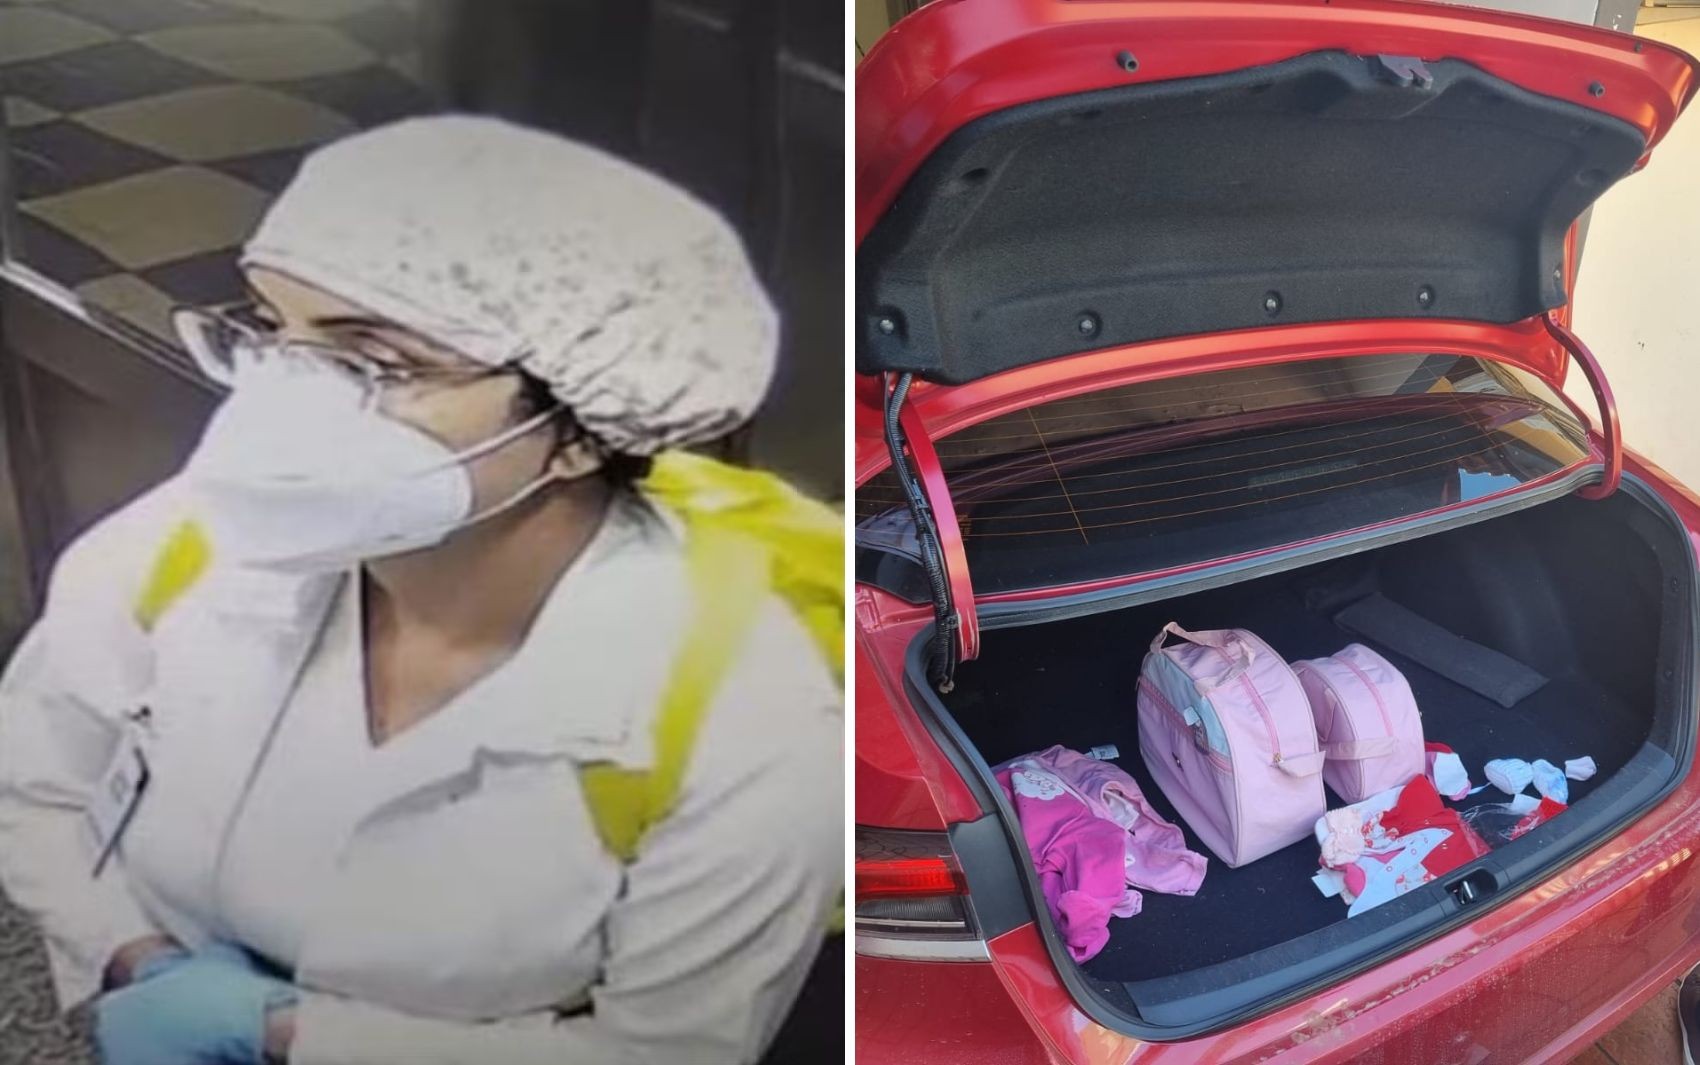 Médica presa suspeita de sequestrar bebê tinha fraldas, banheira e até piscina infantil dentro de carro; veja